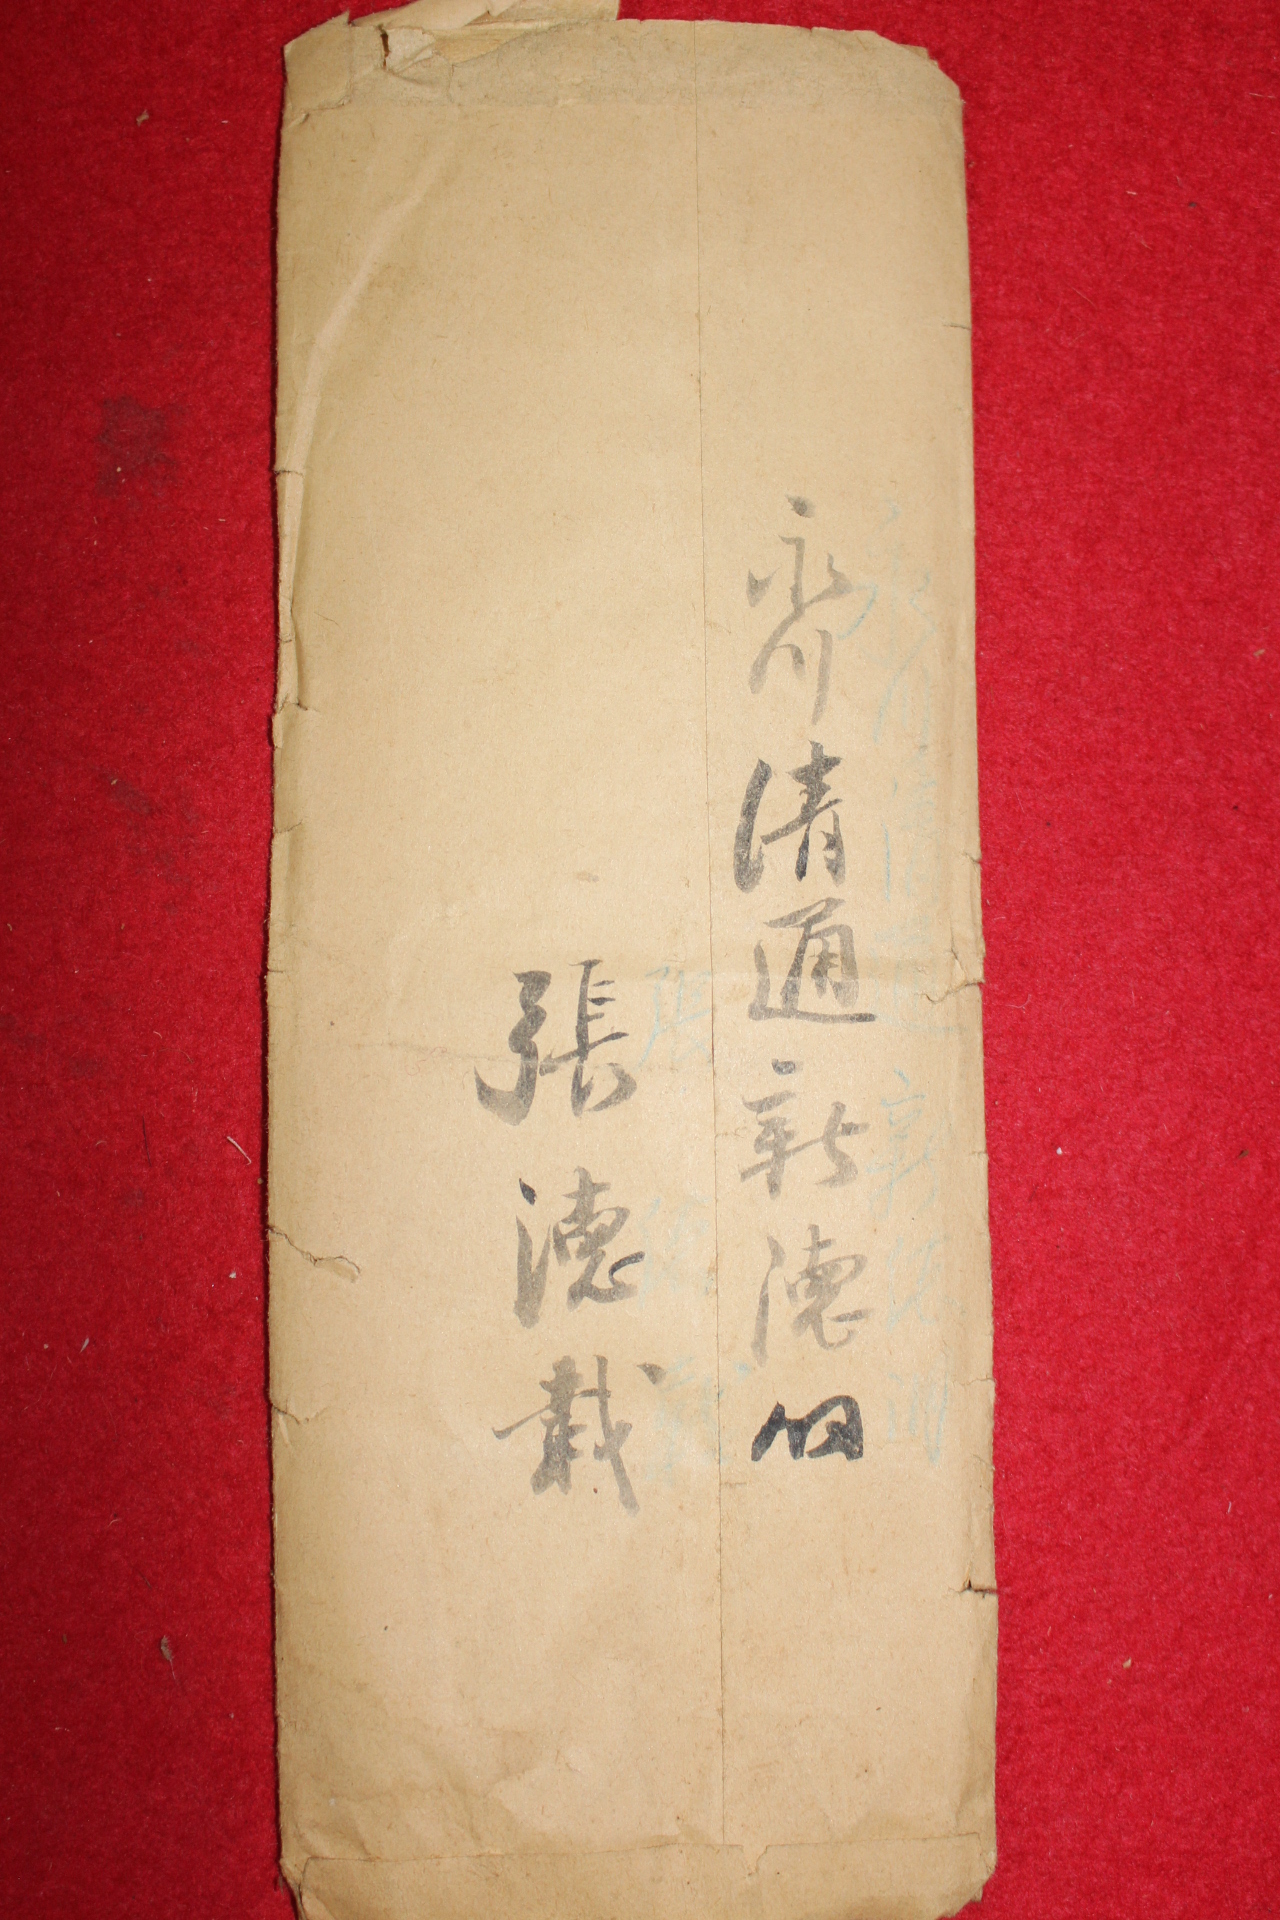 38-1955년(乙未) 장덕재(張德裁) 우편사용실체